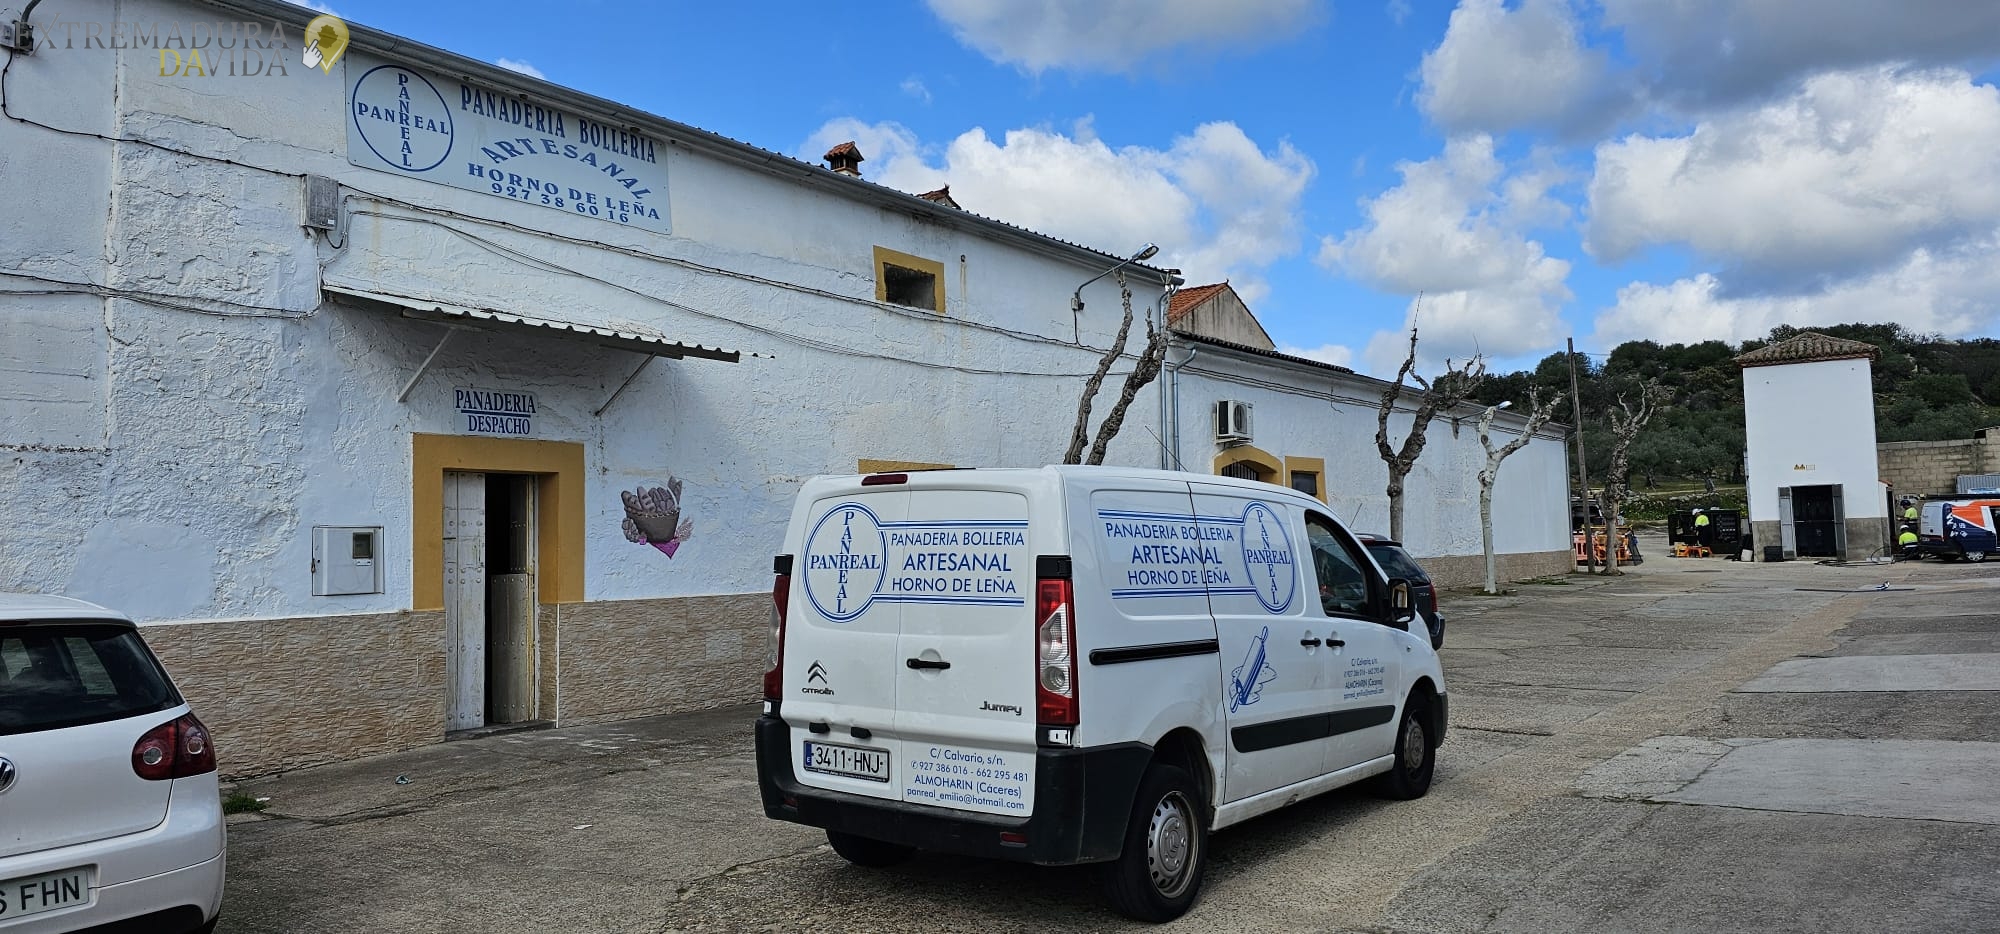 Pan Real Distribuidor de dulces en Cáceres Badajoz Horno de leña Obrador en Almoharín